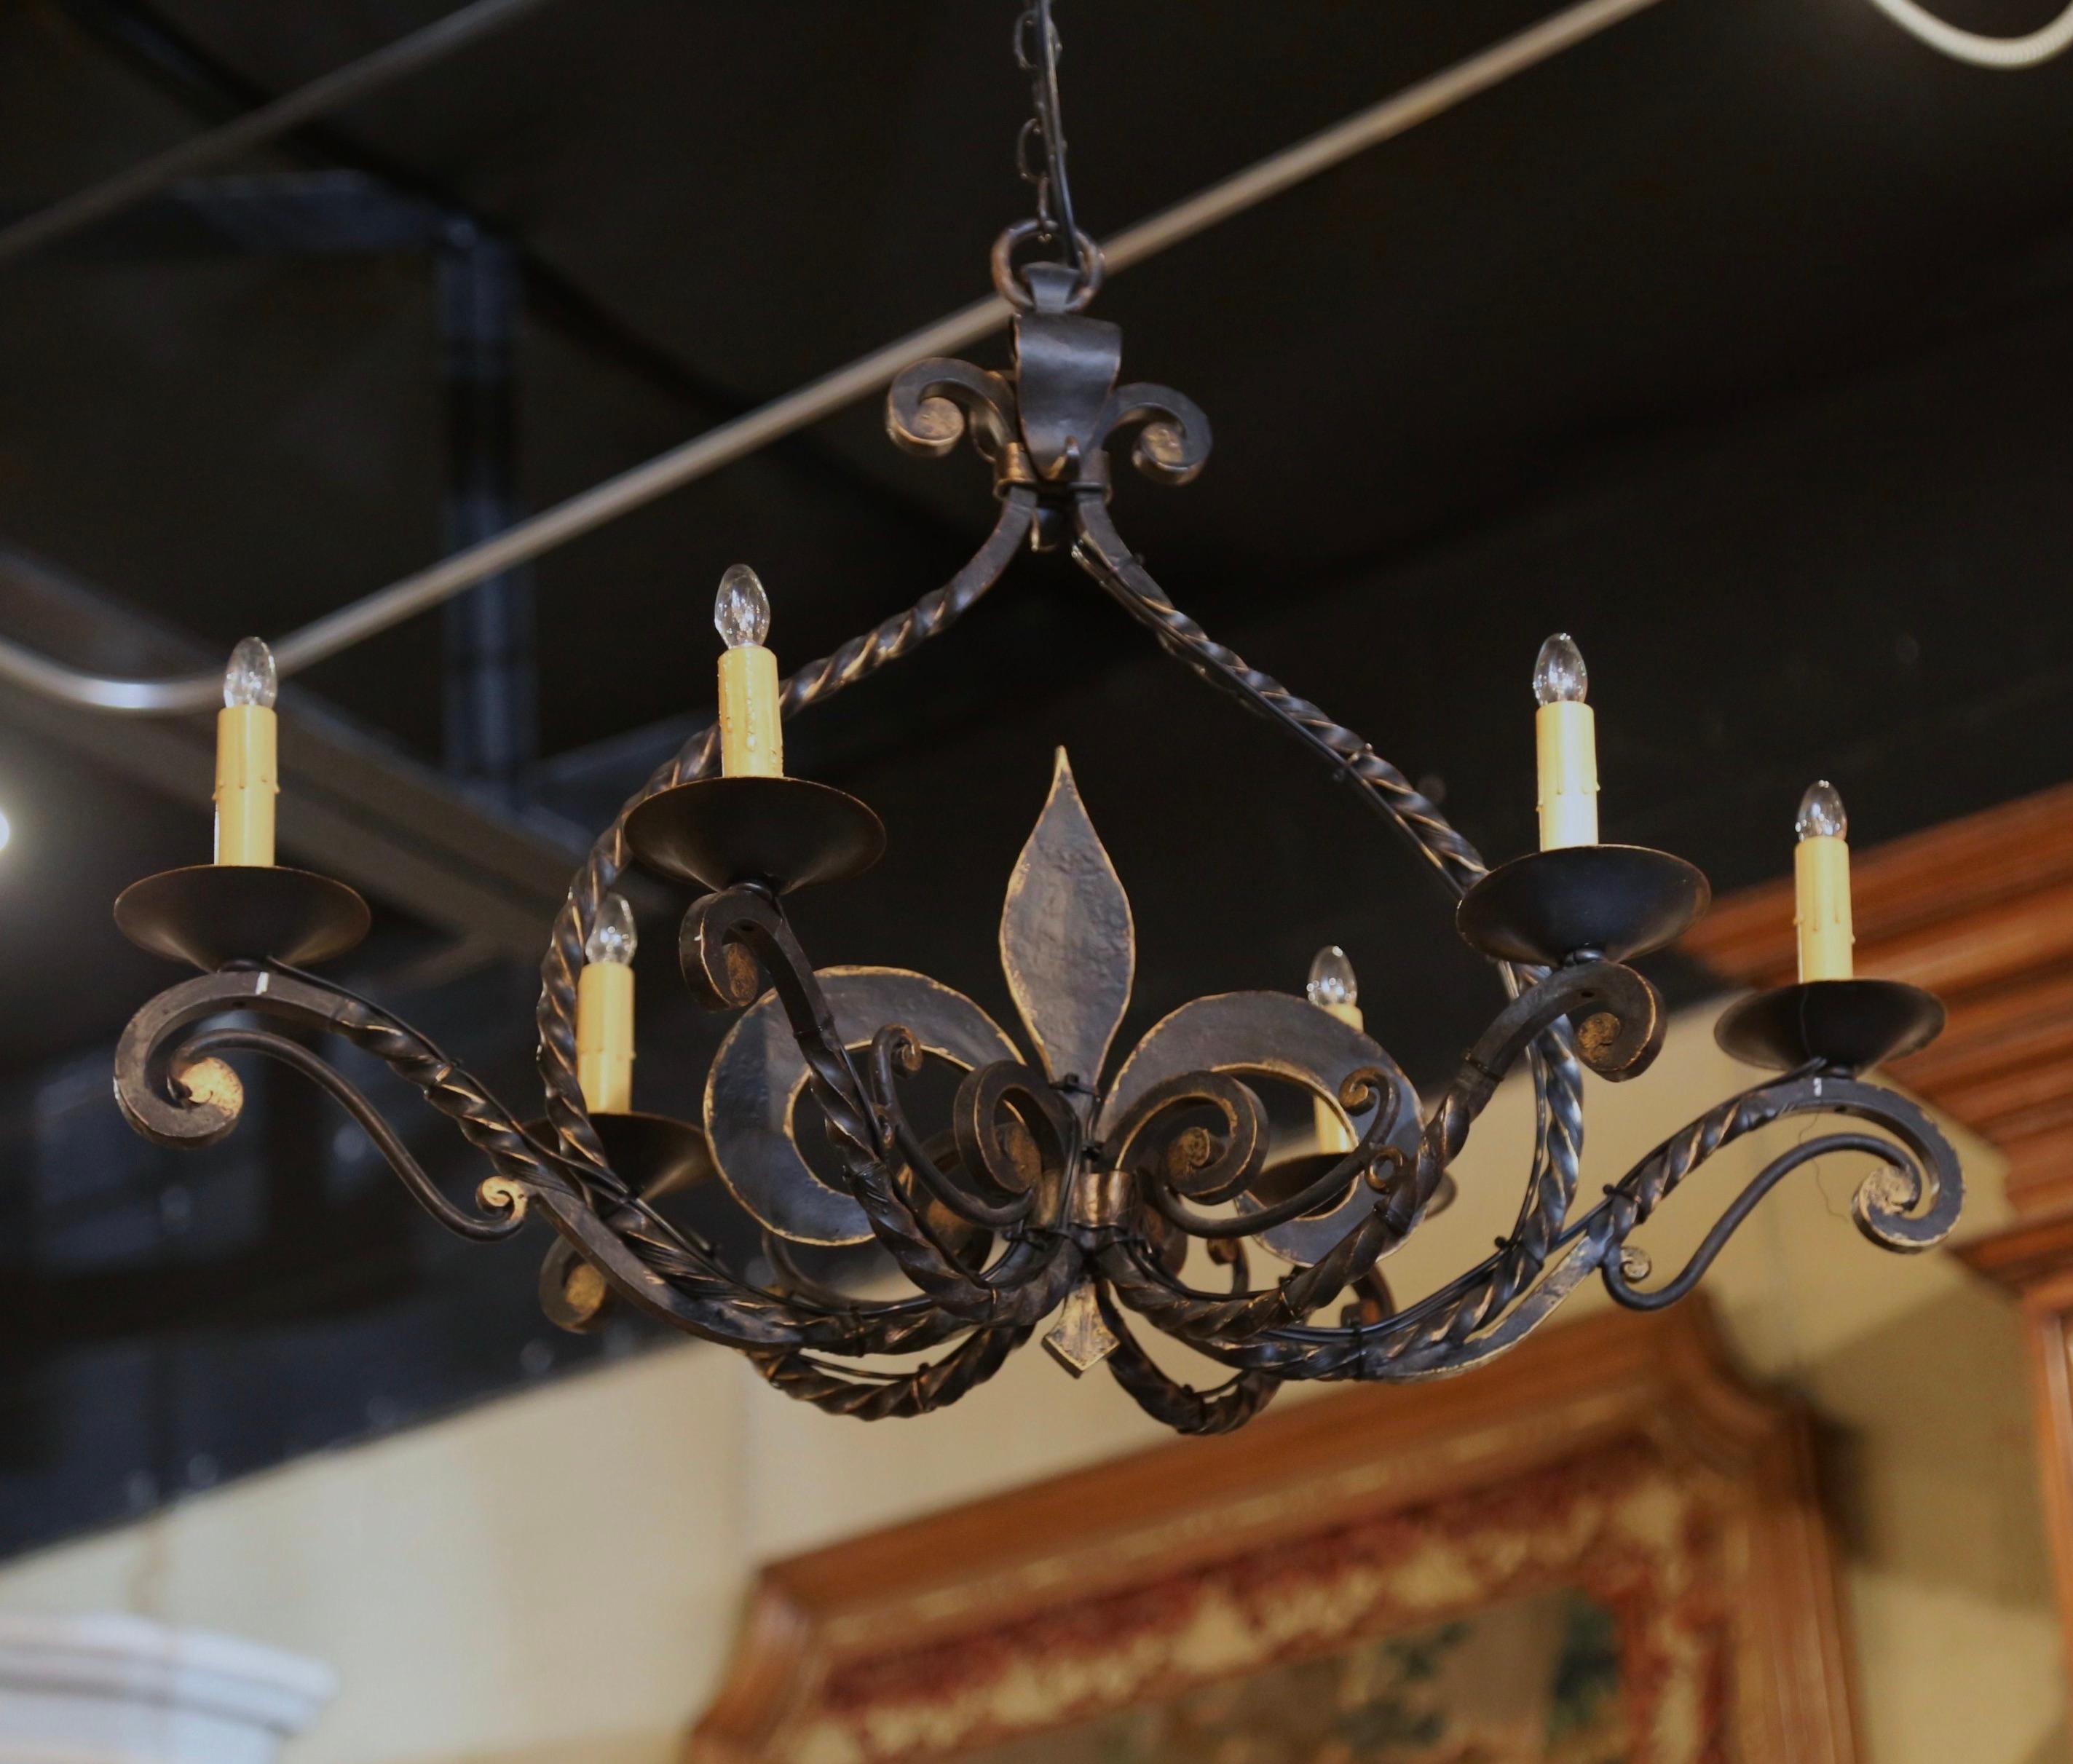 Ajoutez une touche de style gothique à votre maison avec cet élégant luminaire. Forgé en Normandie (France) vers 1920, de forme oblongue, ce lustre ancien est orné d'un grand motif Fleur-de-Lys forgé à la main au centre. Il comporte six lumières